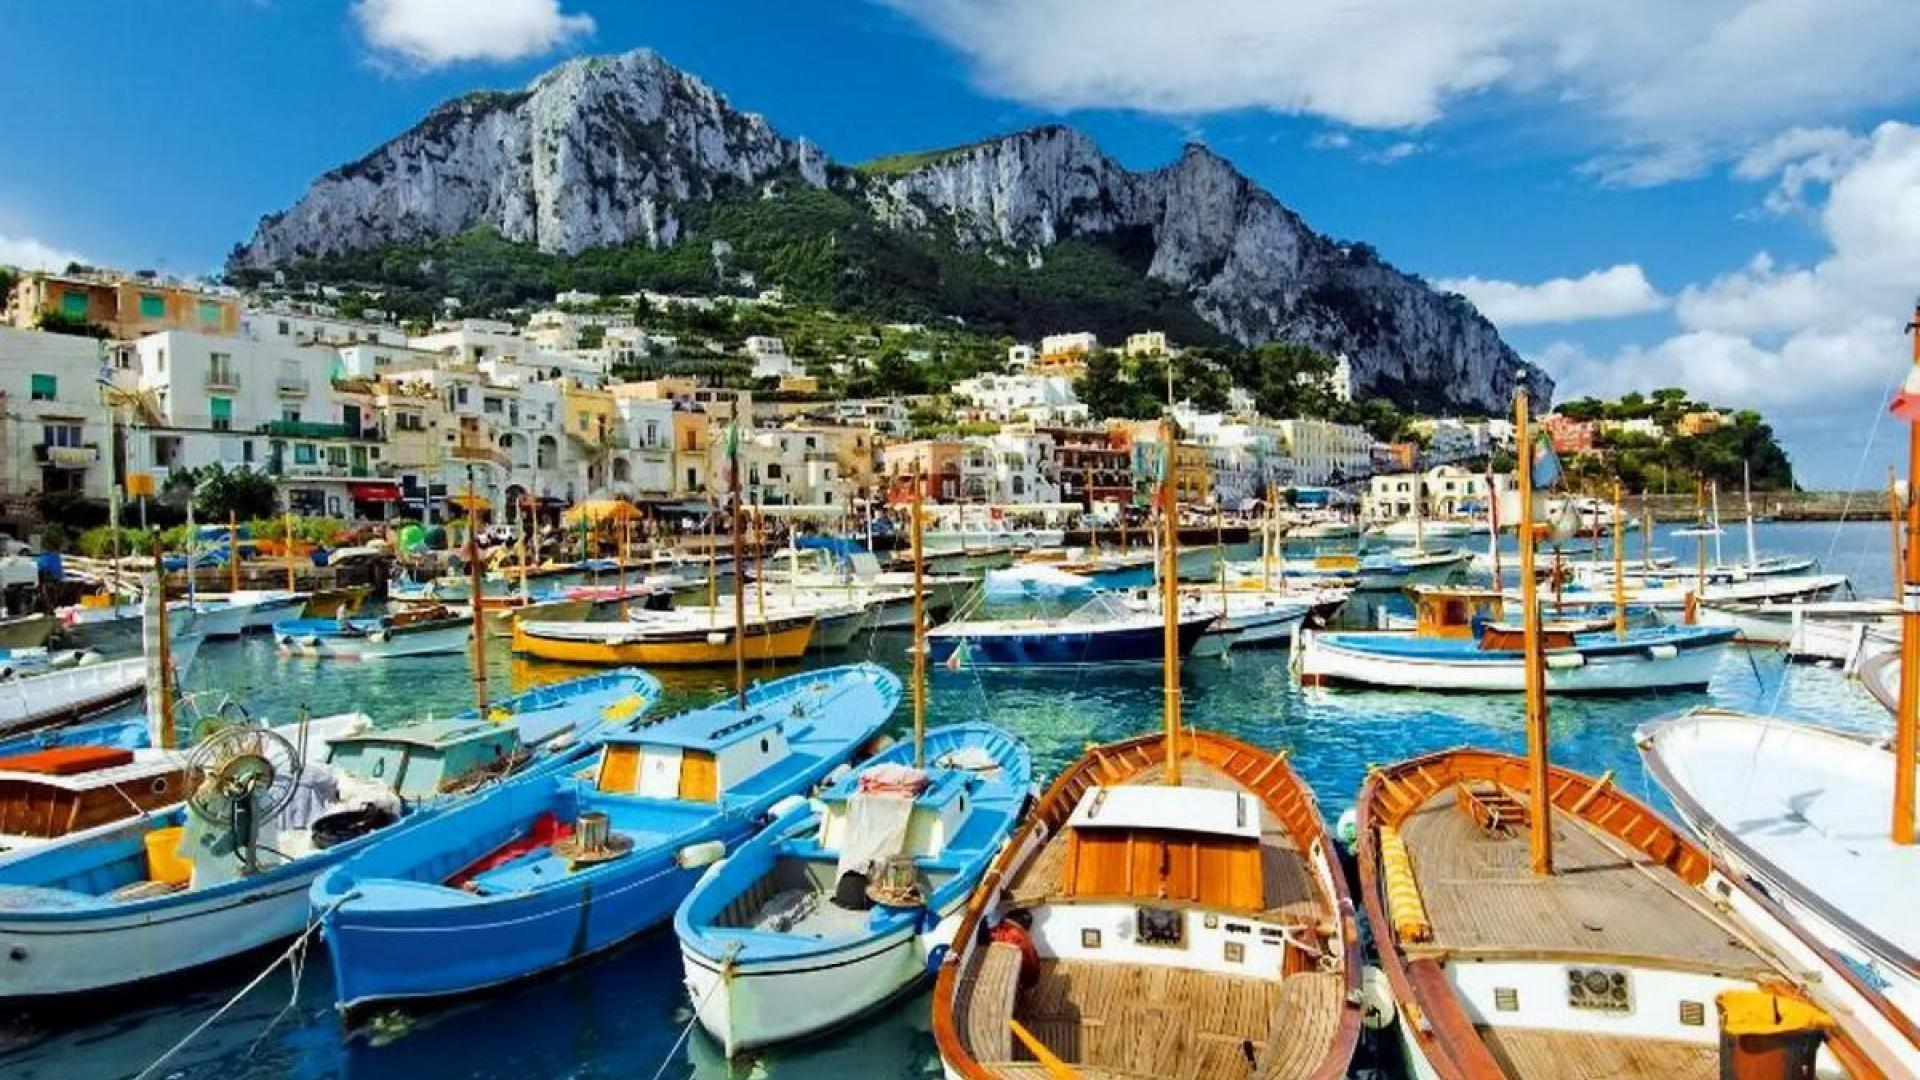 Capri Italy Desktop Wallpapers - Top Free Capri Italy Desktop